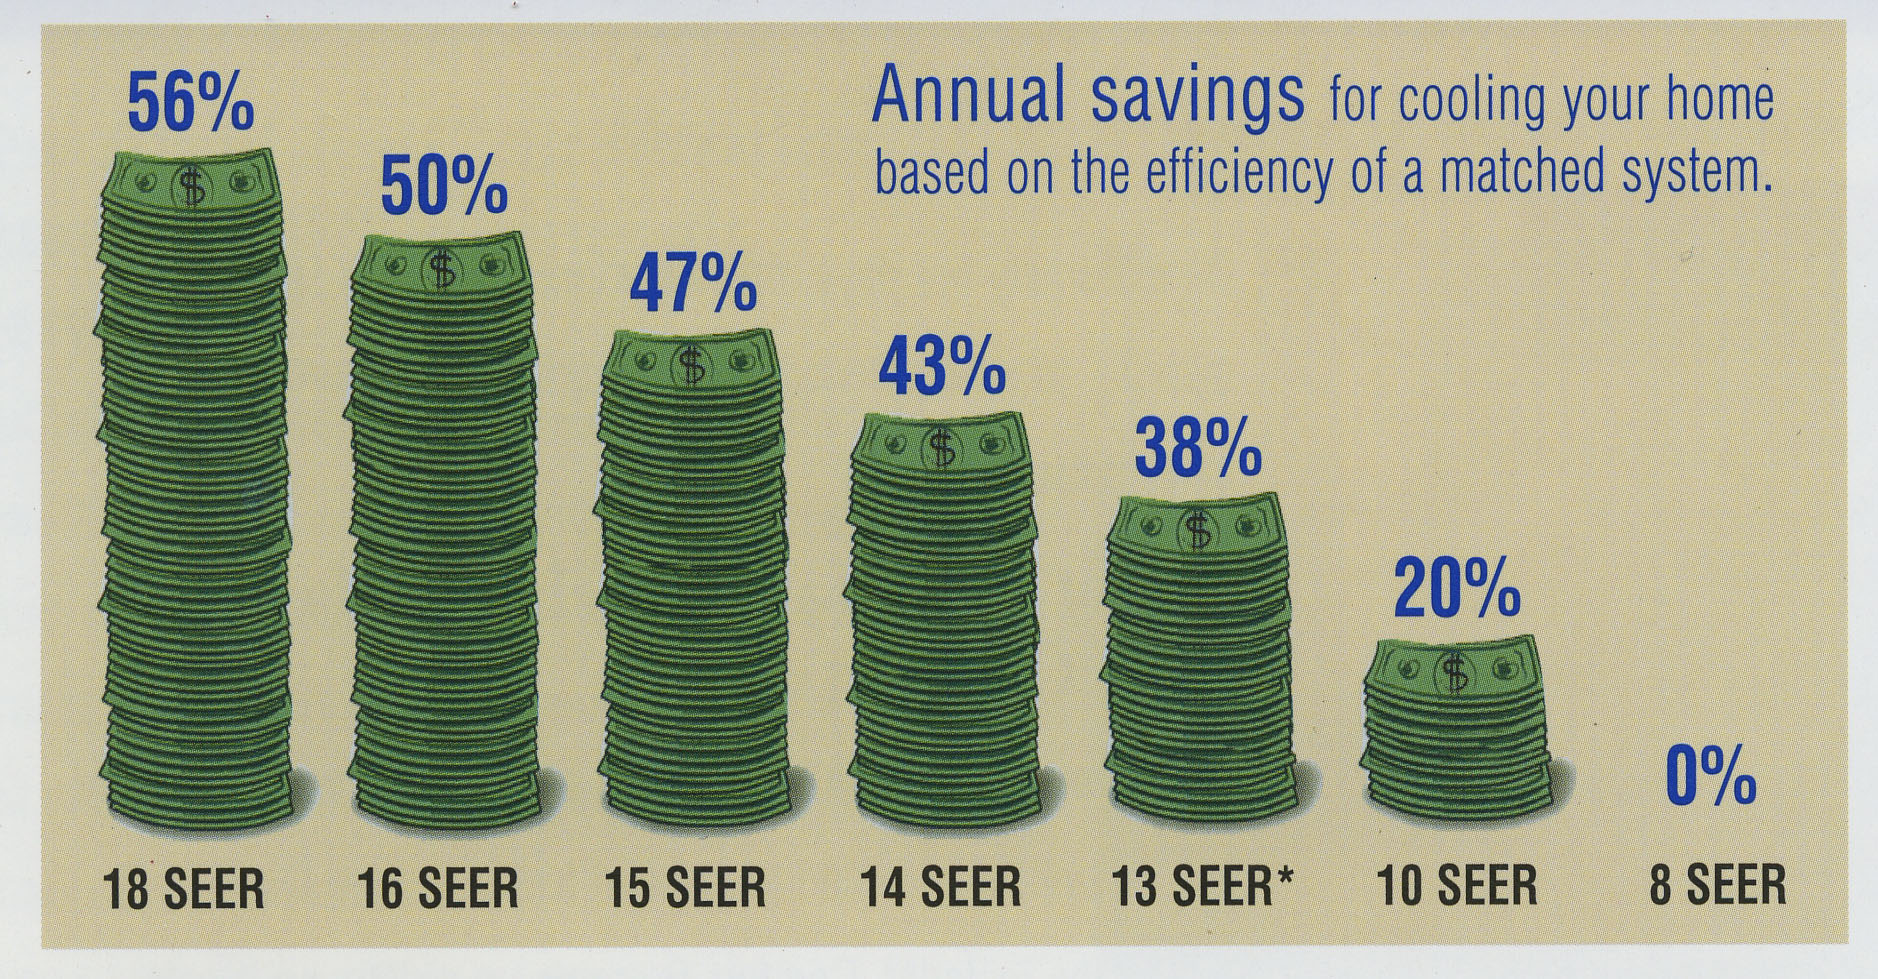 Seer Savings Chart